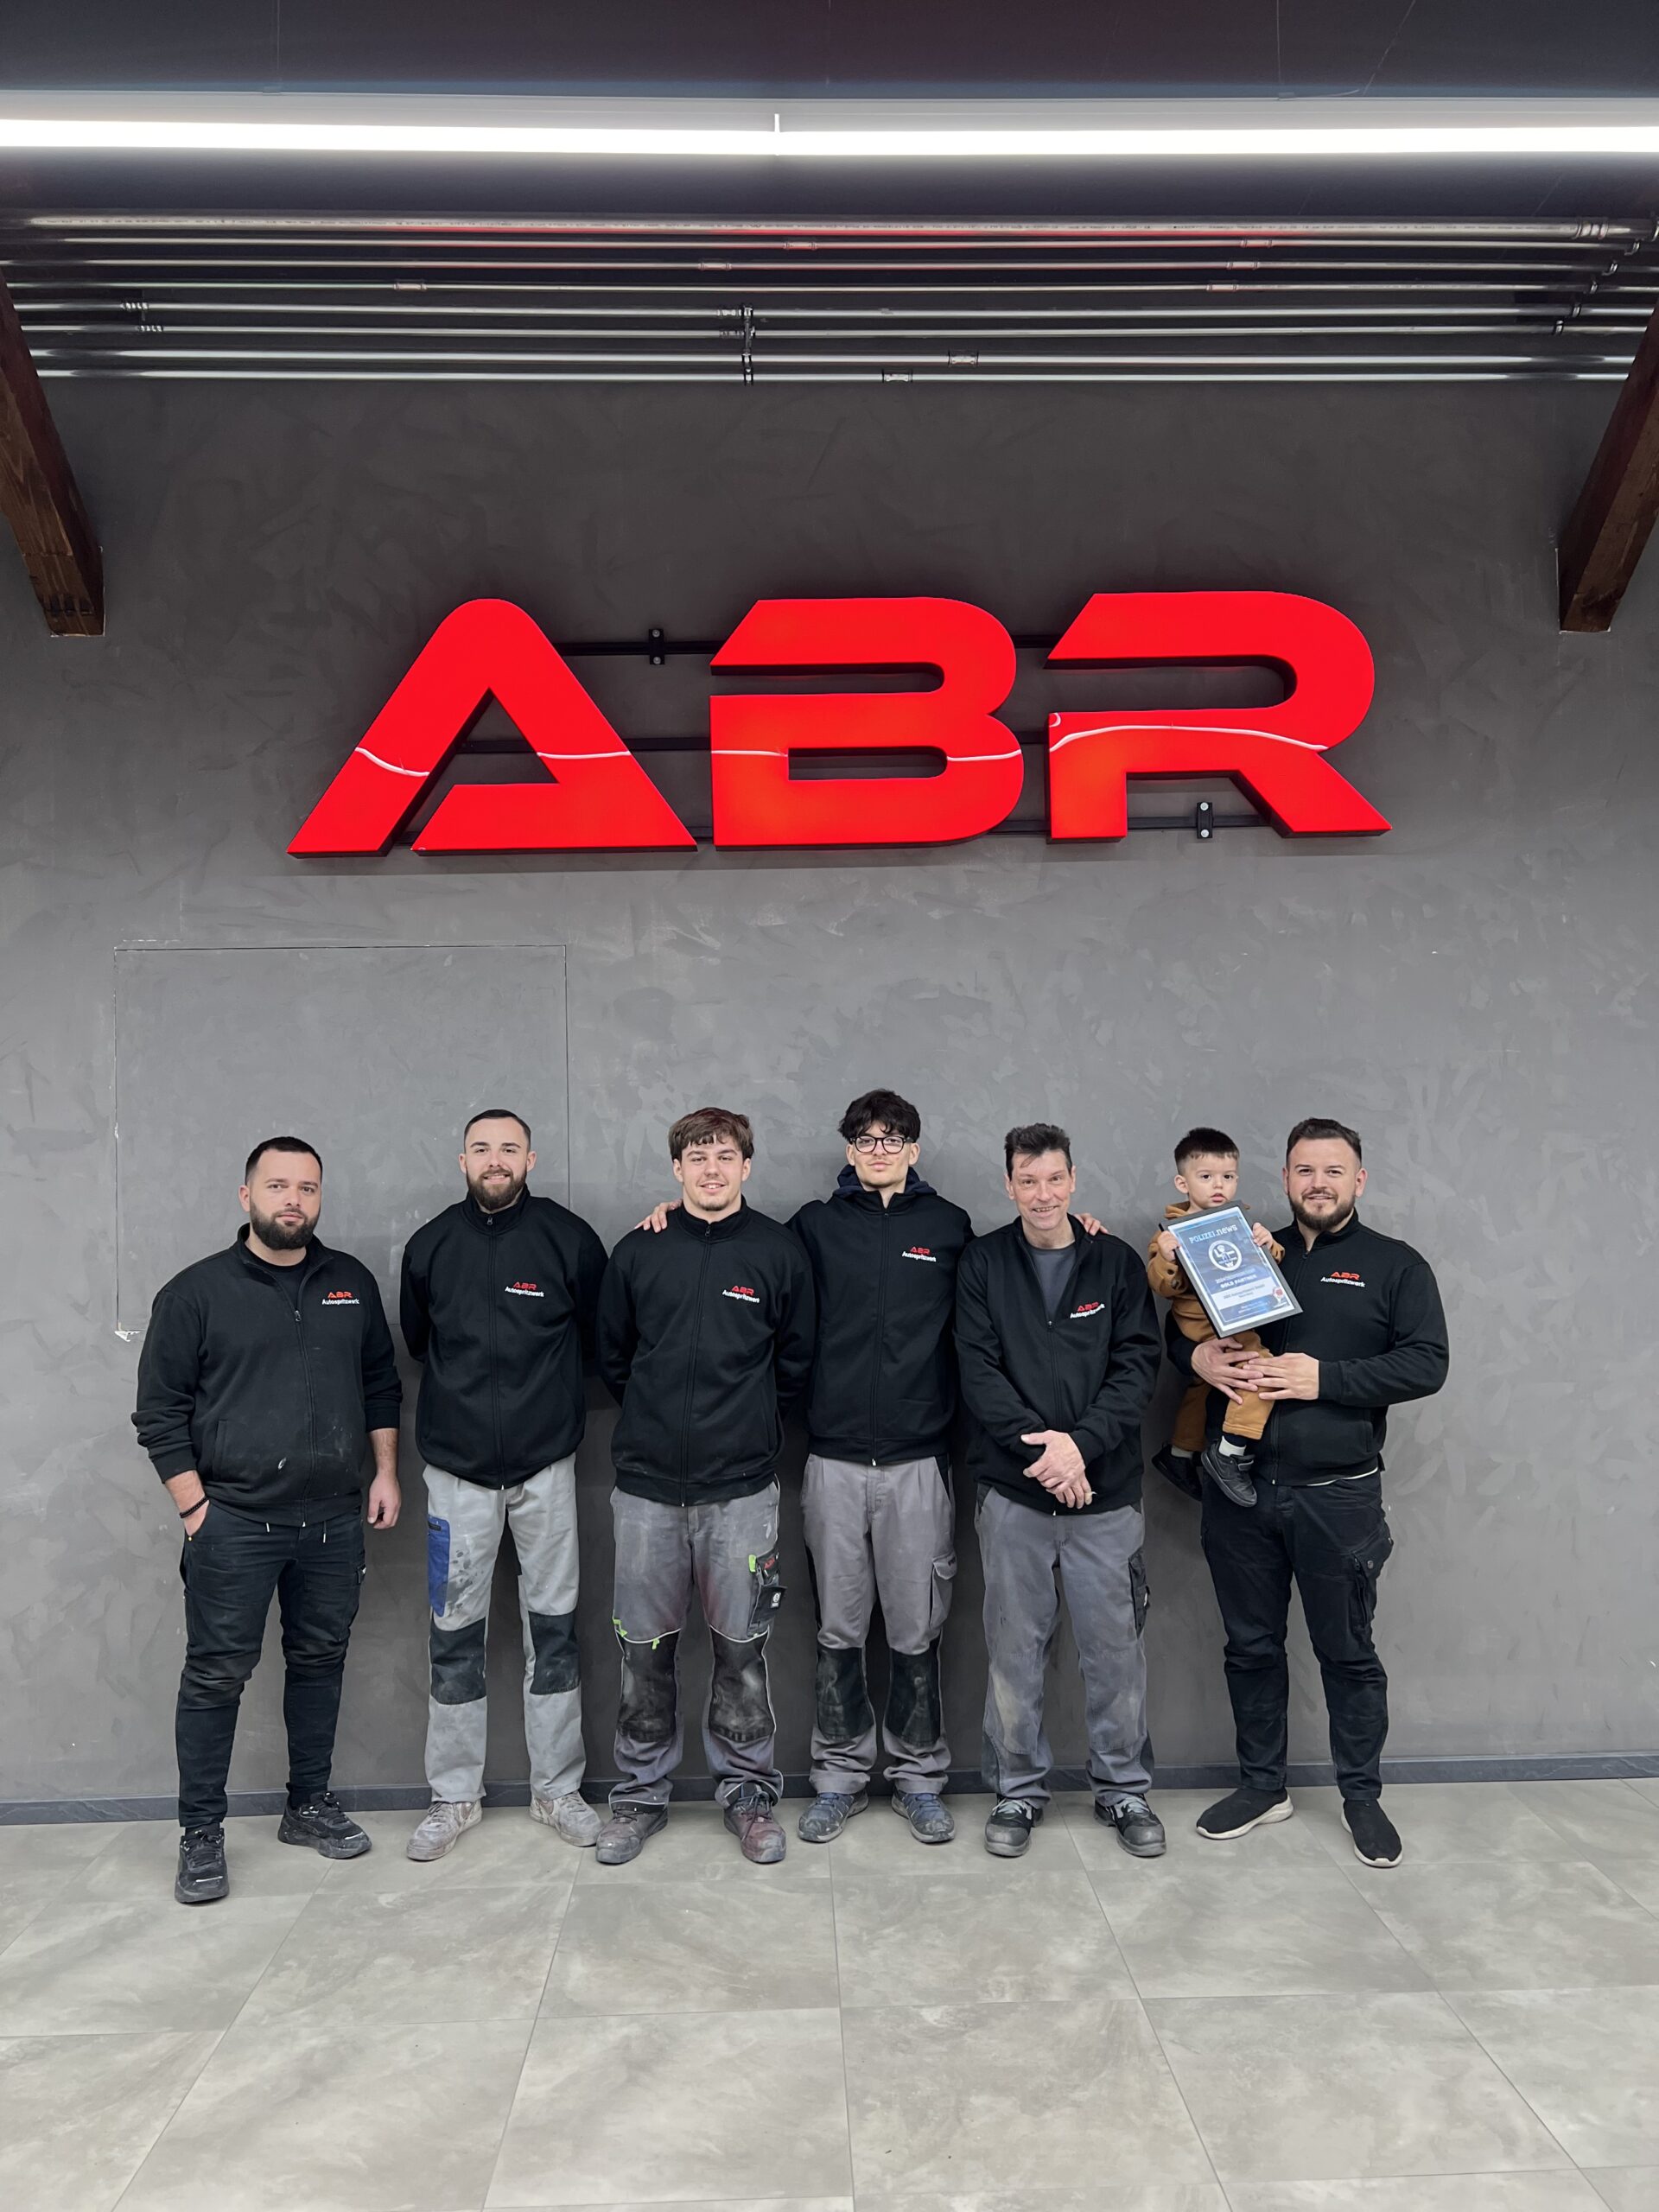 Das ABR Autospritzwerk-Team mit Gold Partner-Urkunde von Polizei.news (Bild: © Philipp Ochsner)